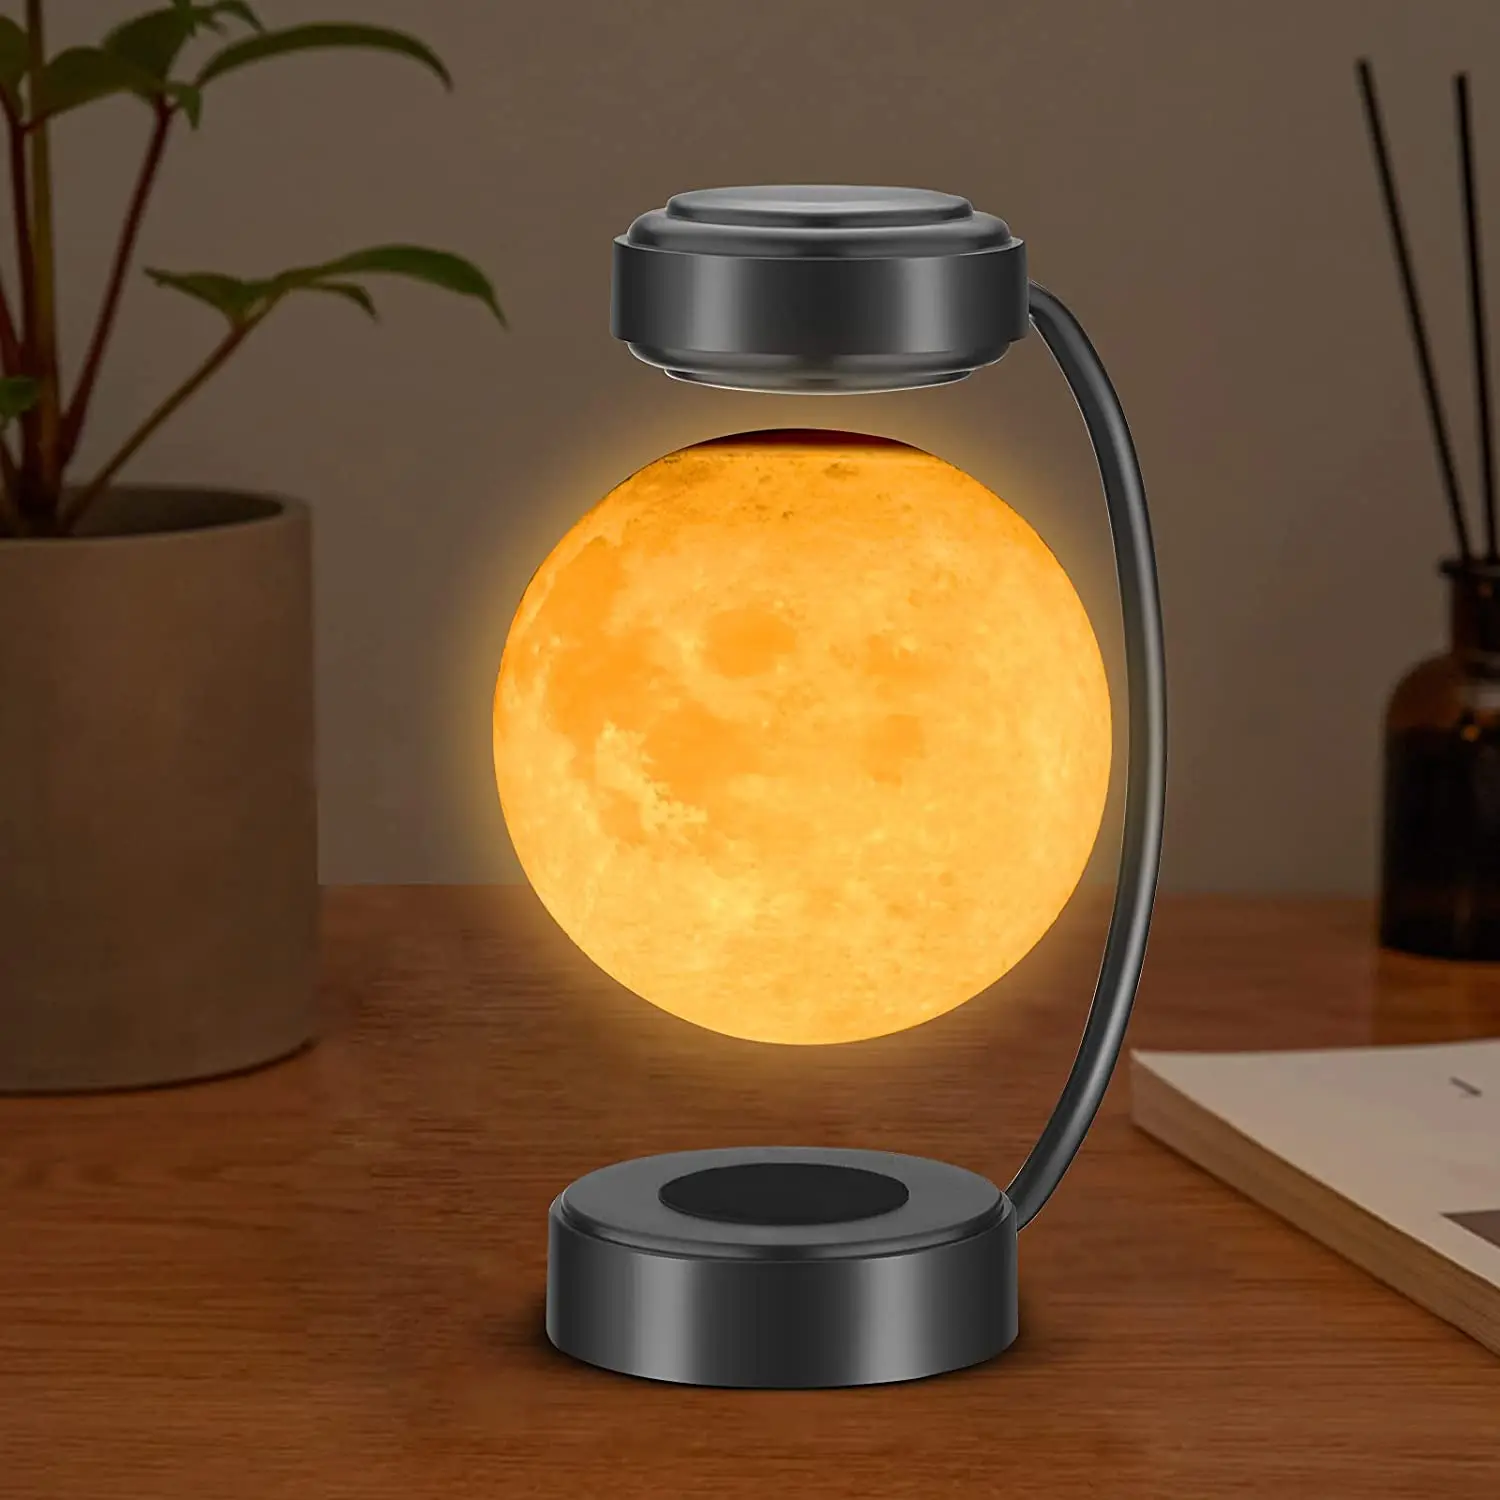 Relaxing 14cm Diameter 3D Printed Silent Magnetic Levitating Moon Lamp/Light 